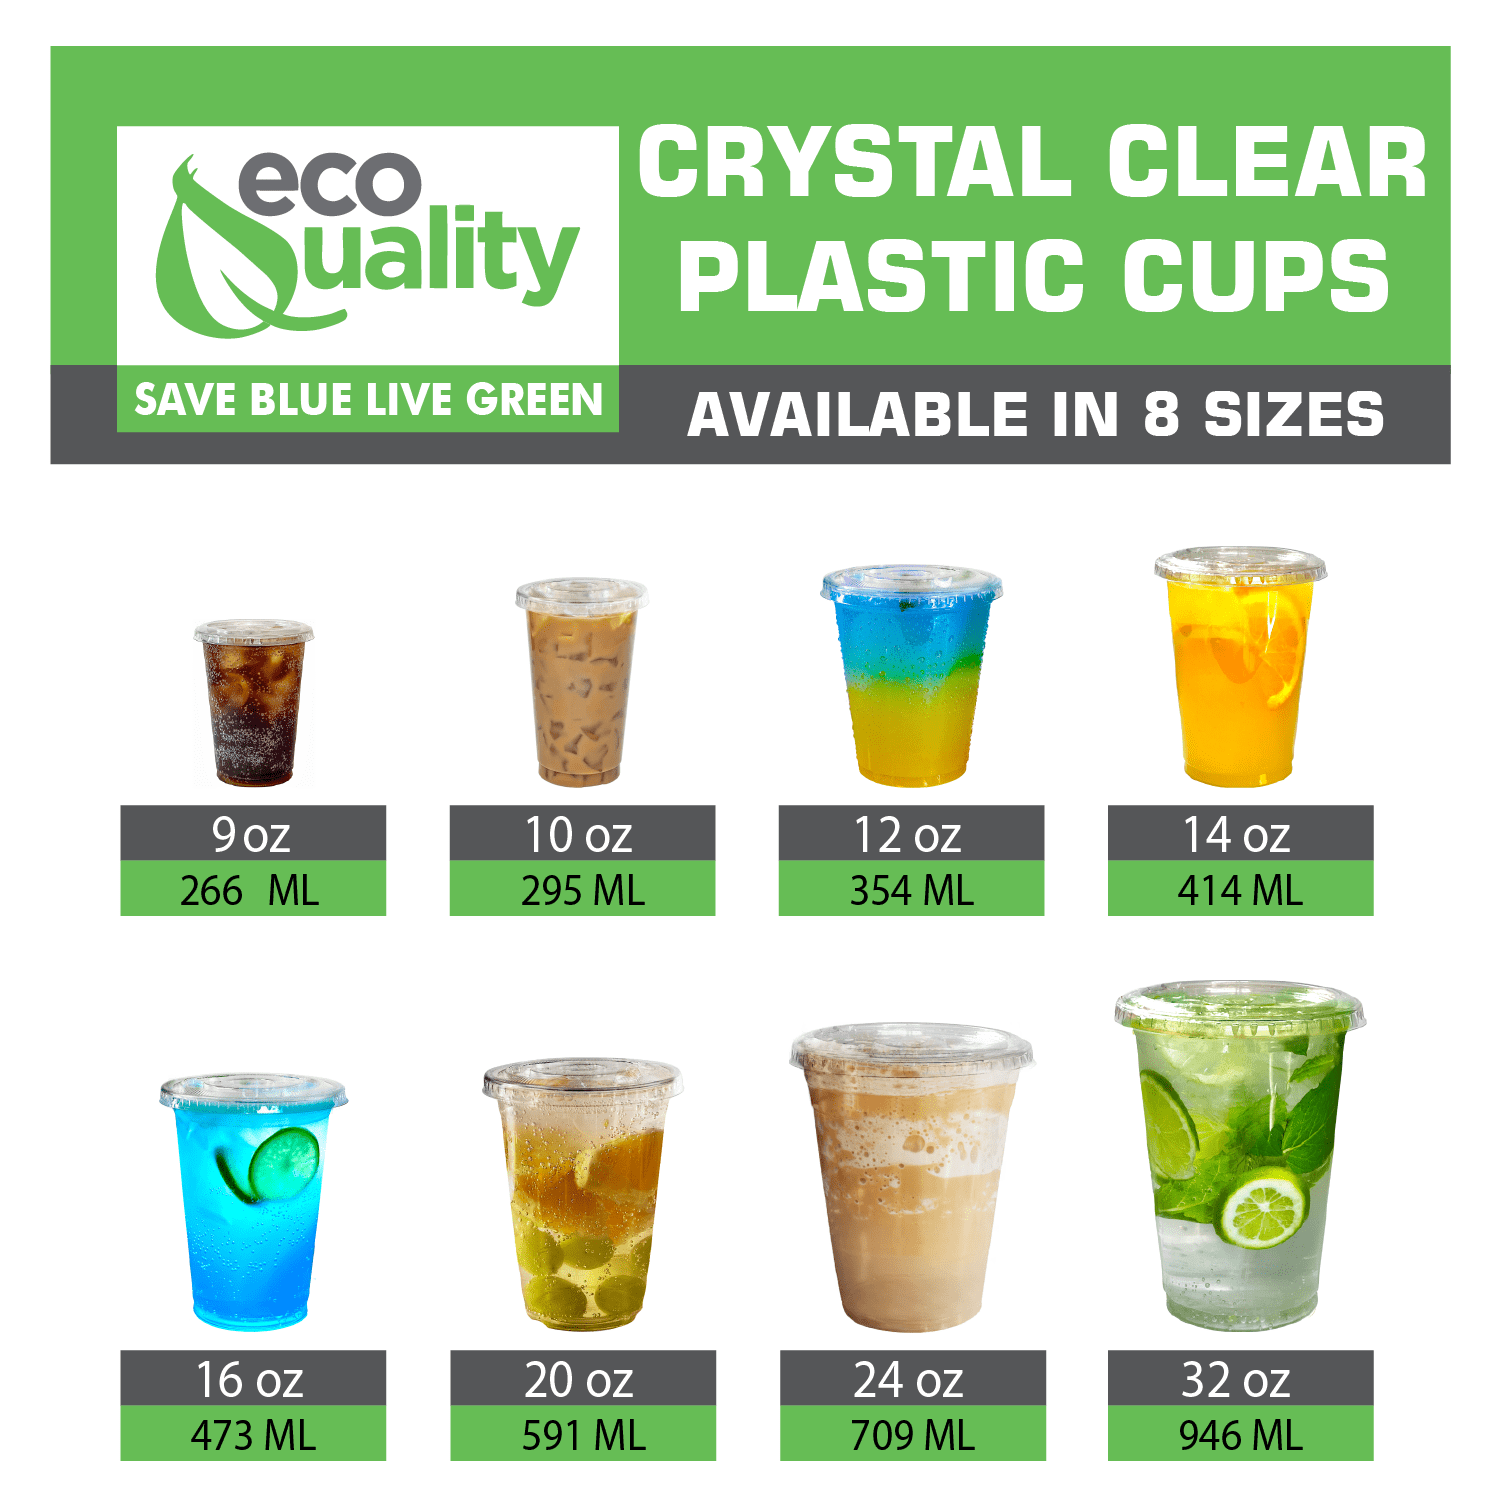 Plastic Cup Reusable PP Clear 330ml Ø7,9cm (50 Units)